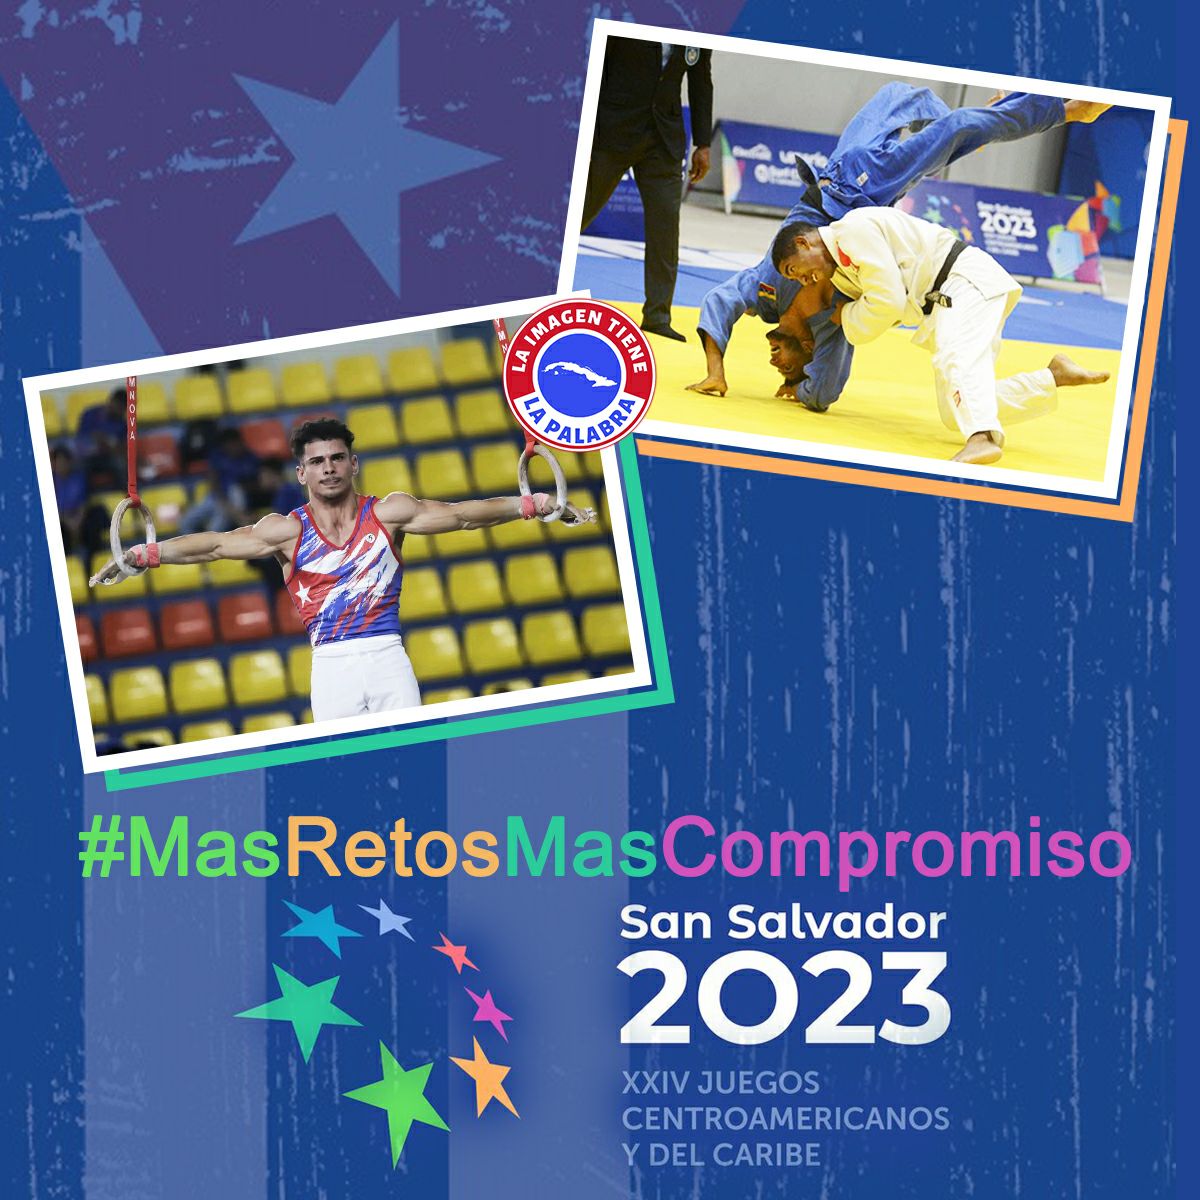 #MasRetosMasCompromiso 
#CubaVive